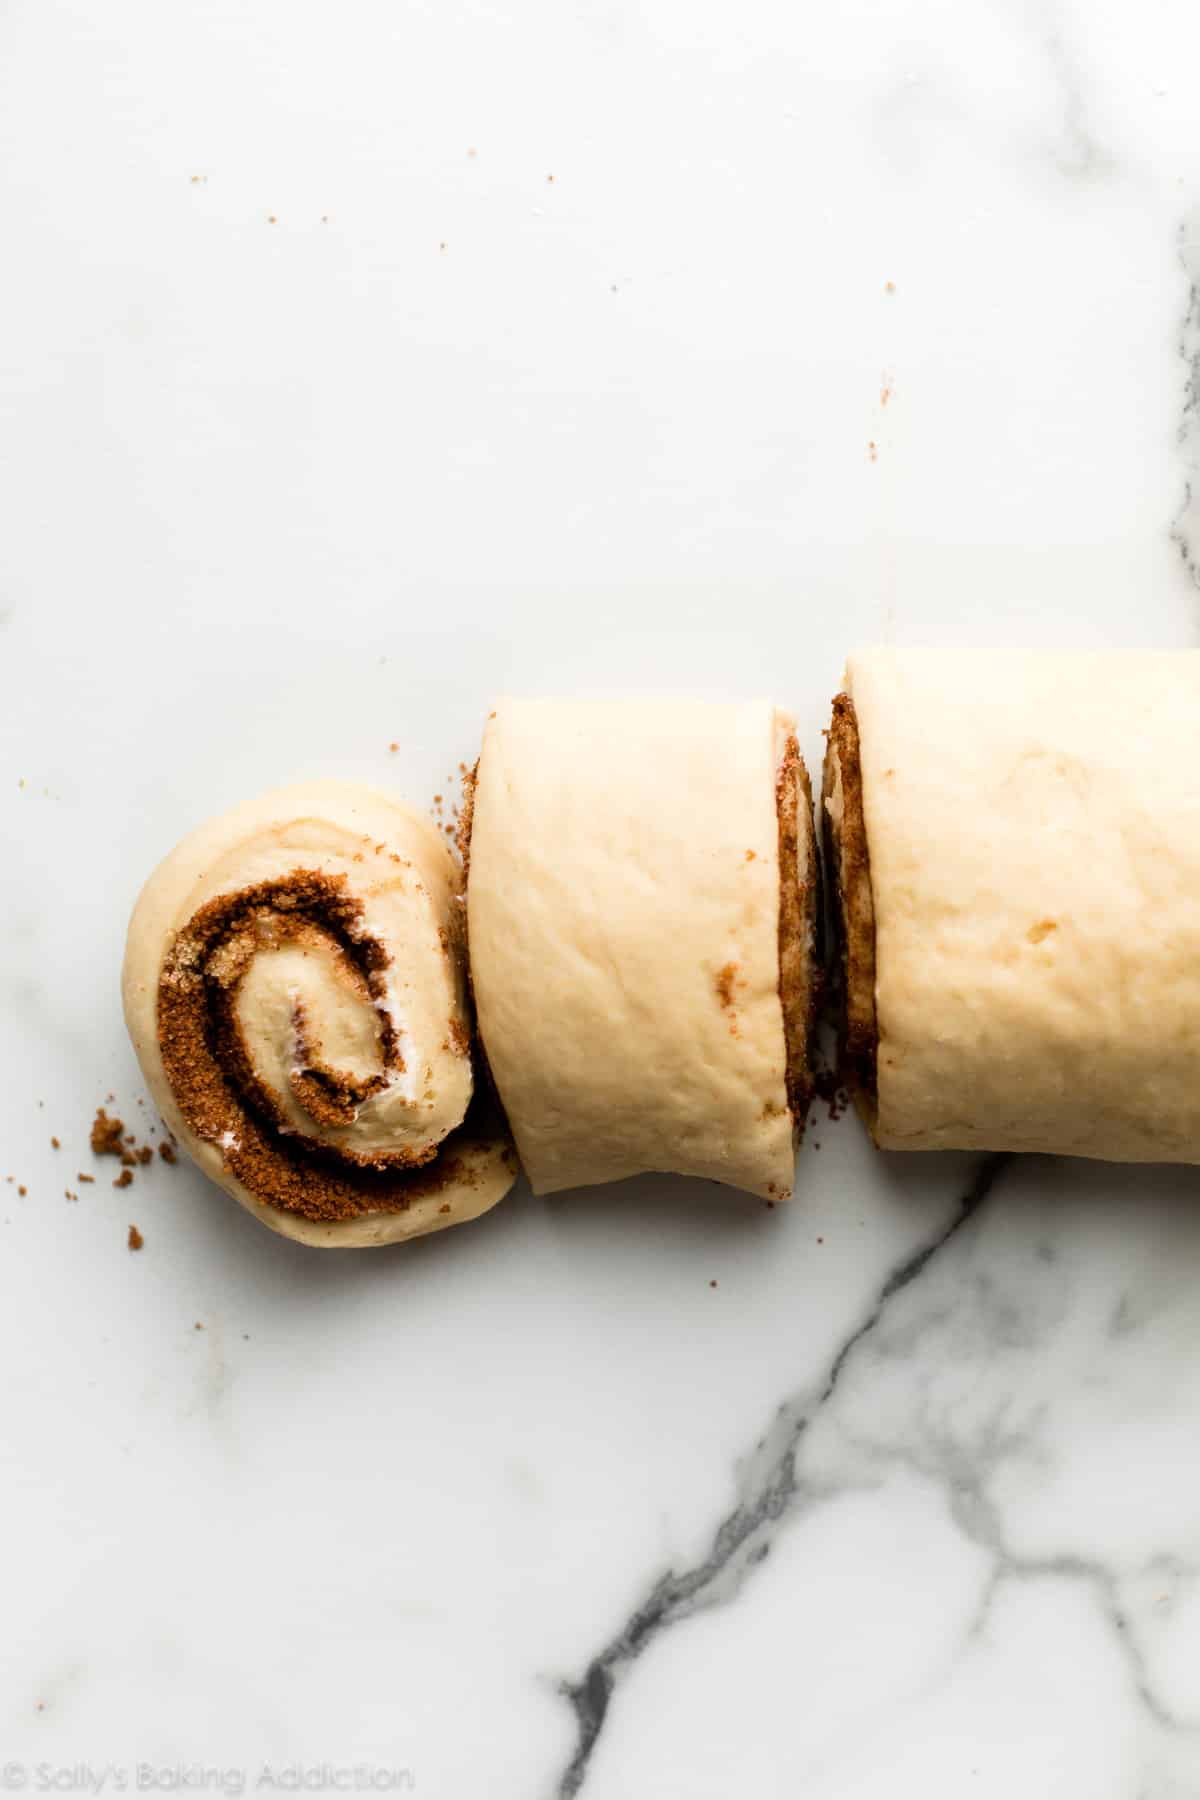 cutting cinnamon roll dough into rolls